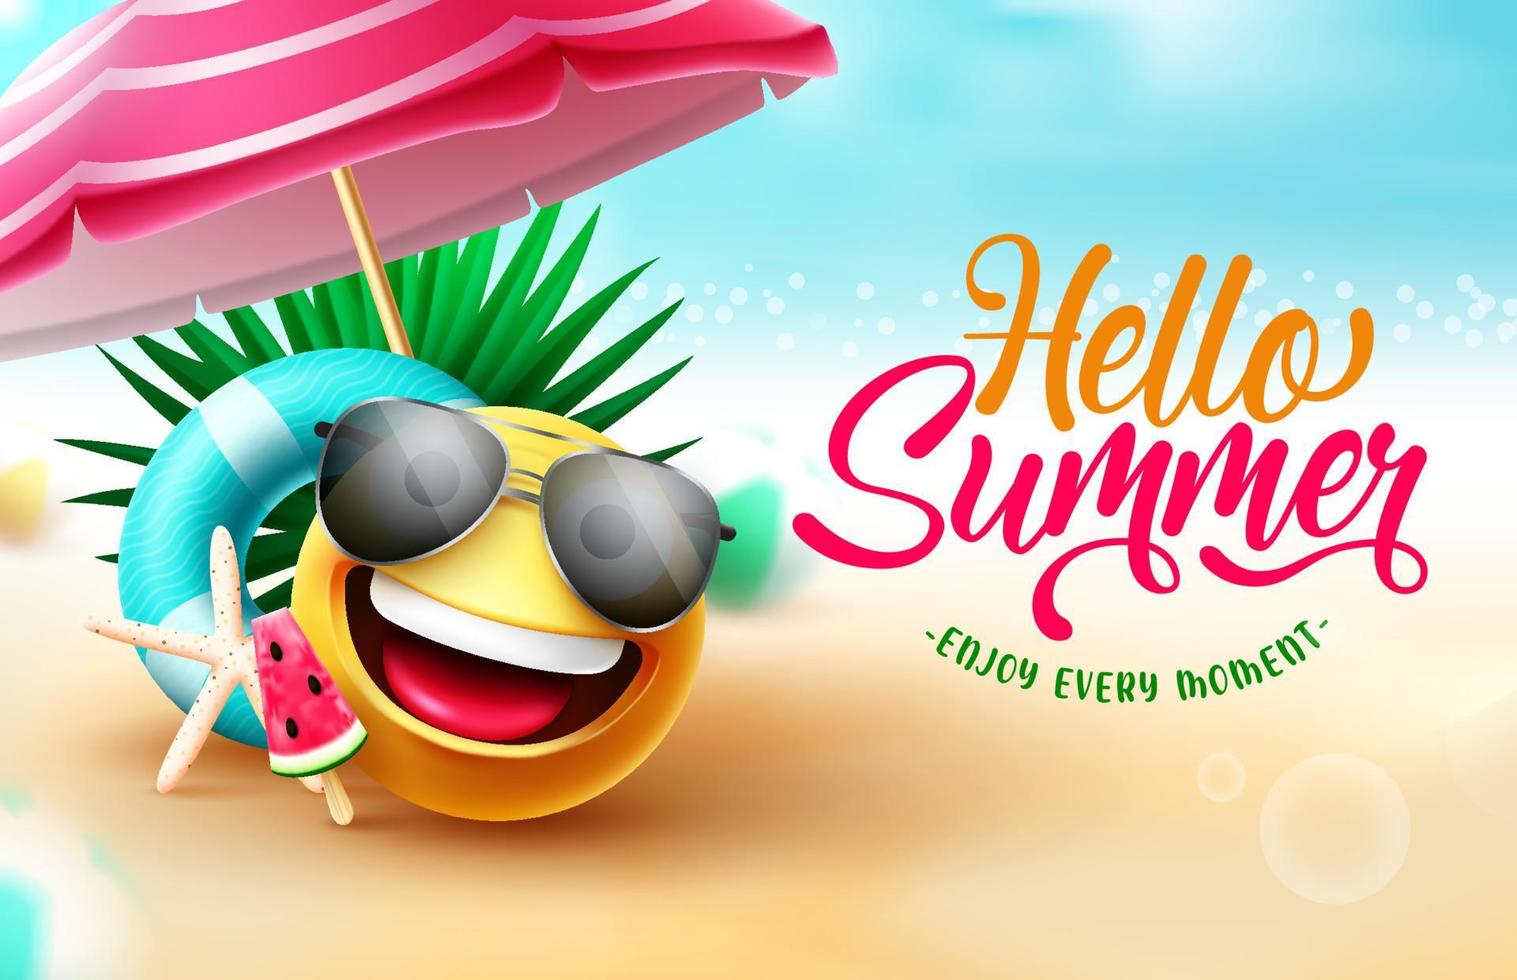 Sommer-Gruß-Vektor-Design. hallo sommertext im strandhintergrund mit emoji-charakter, regenschirm und schwimmerelementen für sonnige tropische saison. Vektor-Illustration. vektor